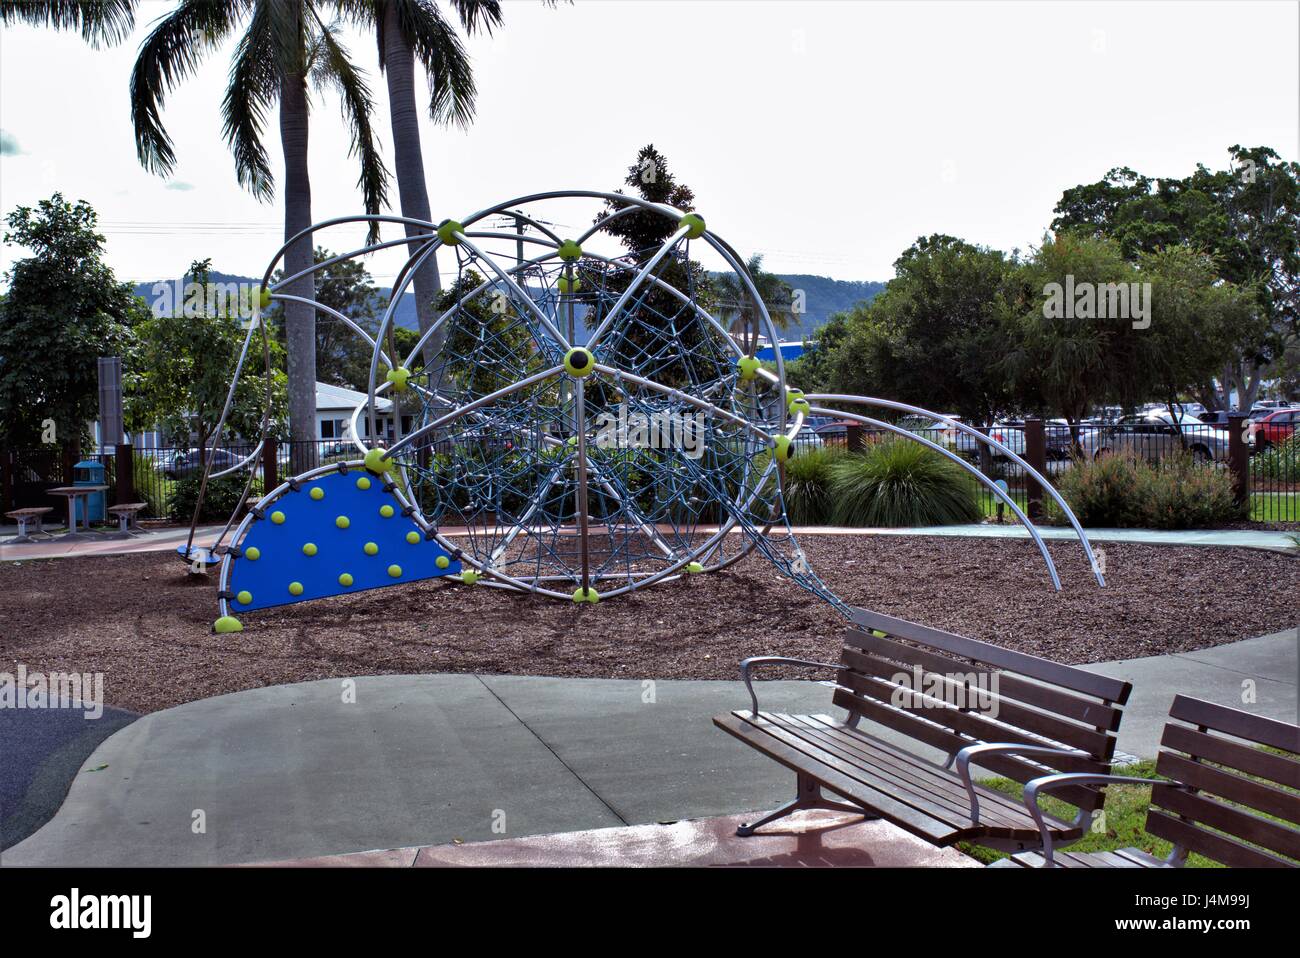 Parco per bambini in australiano. Parco per bambini con giostre realizzati in metallo e corde, erba, alberi e panchine in vista. Foto Stock